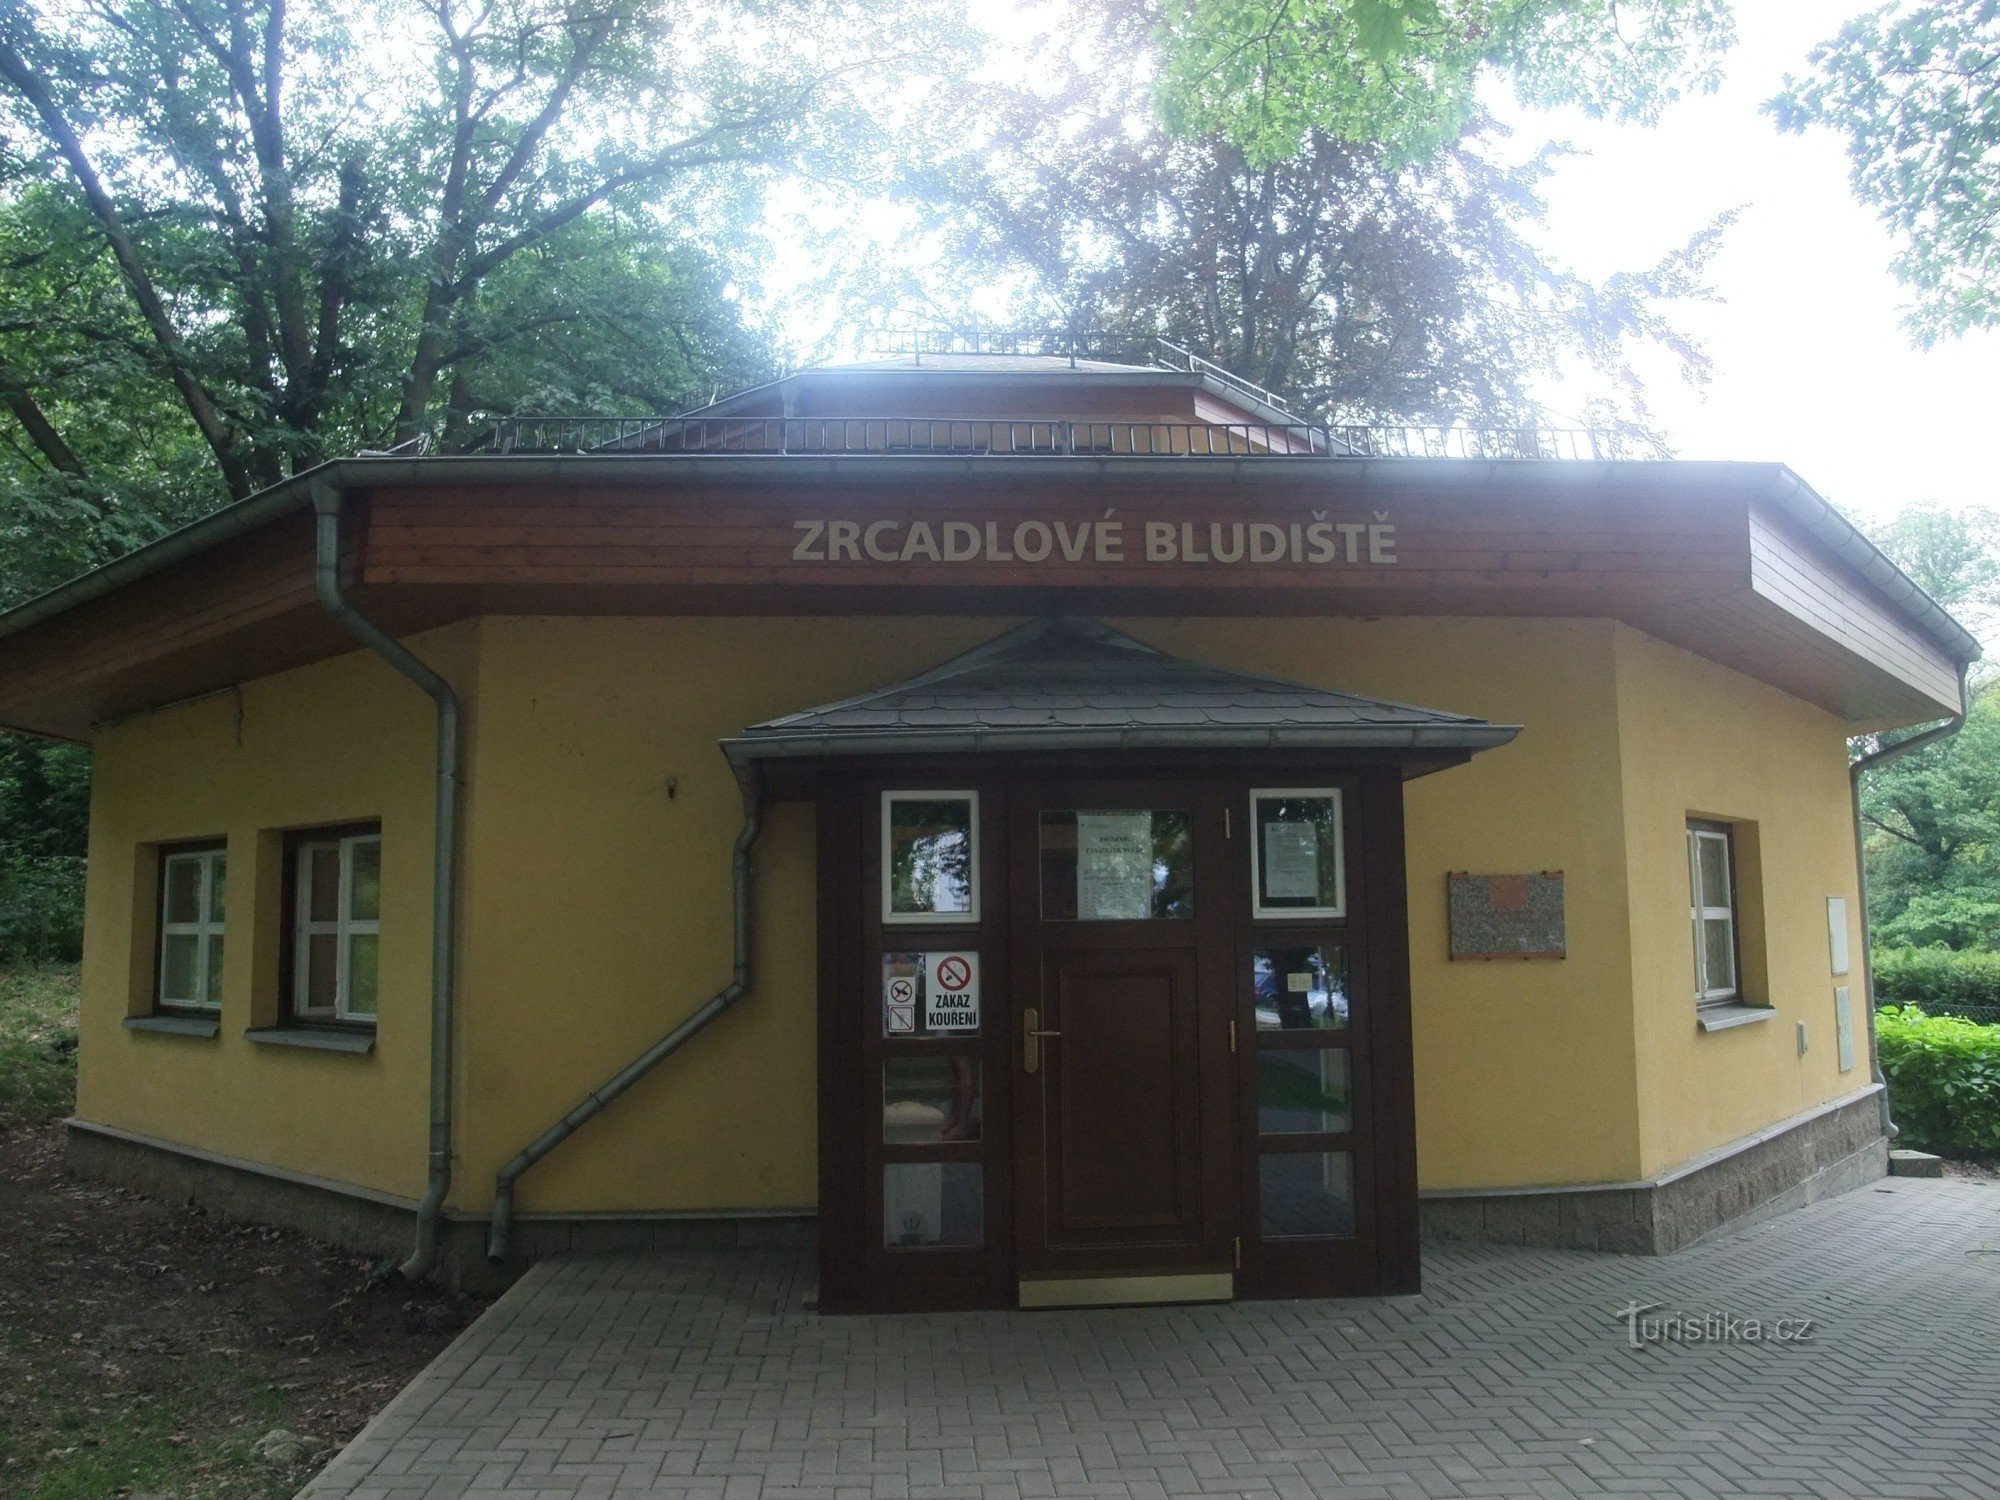 Ogledalo i prirodni labirint u Větruši - Ústí nad Labem